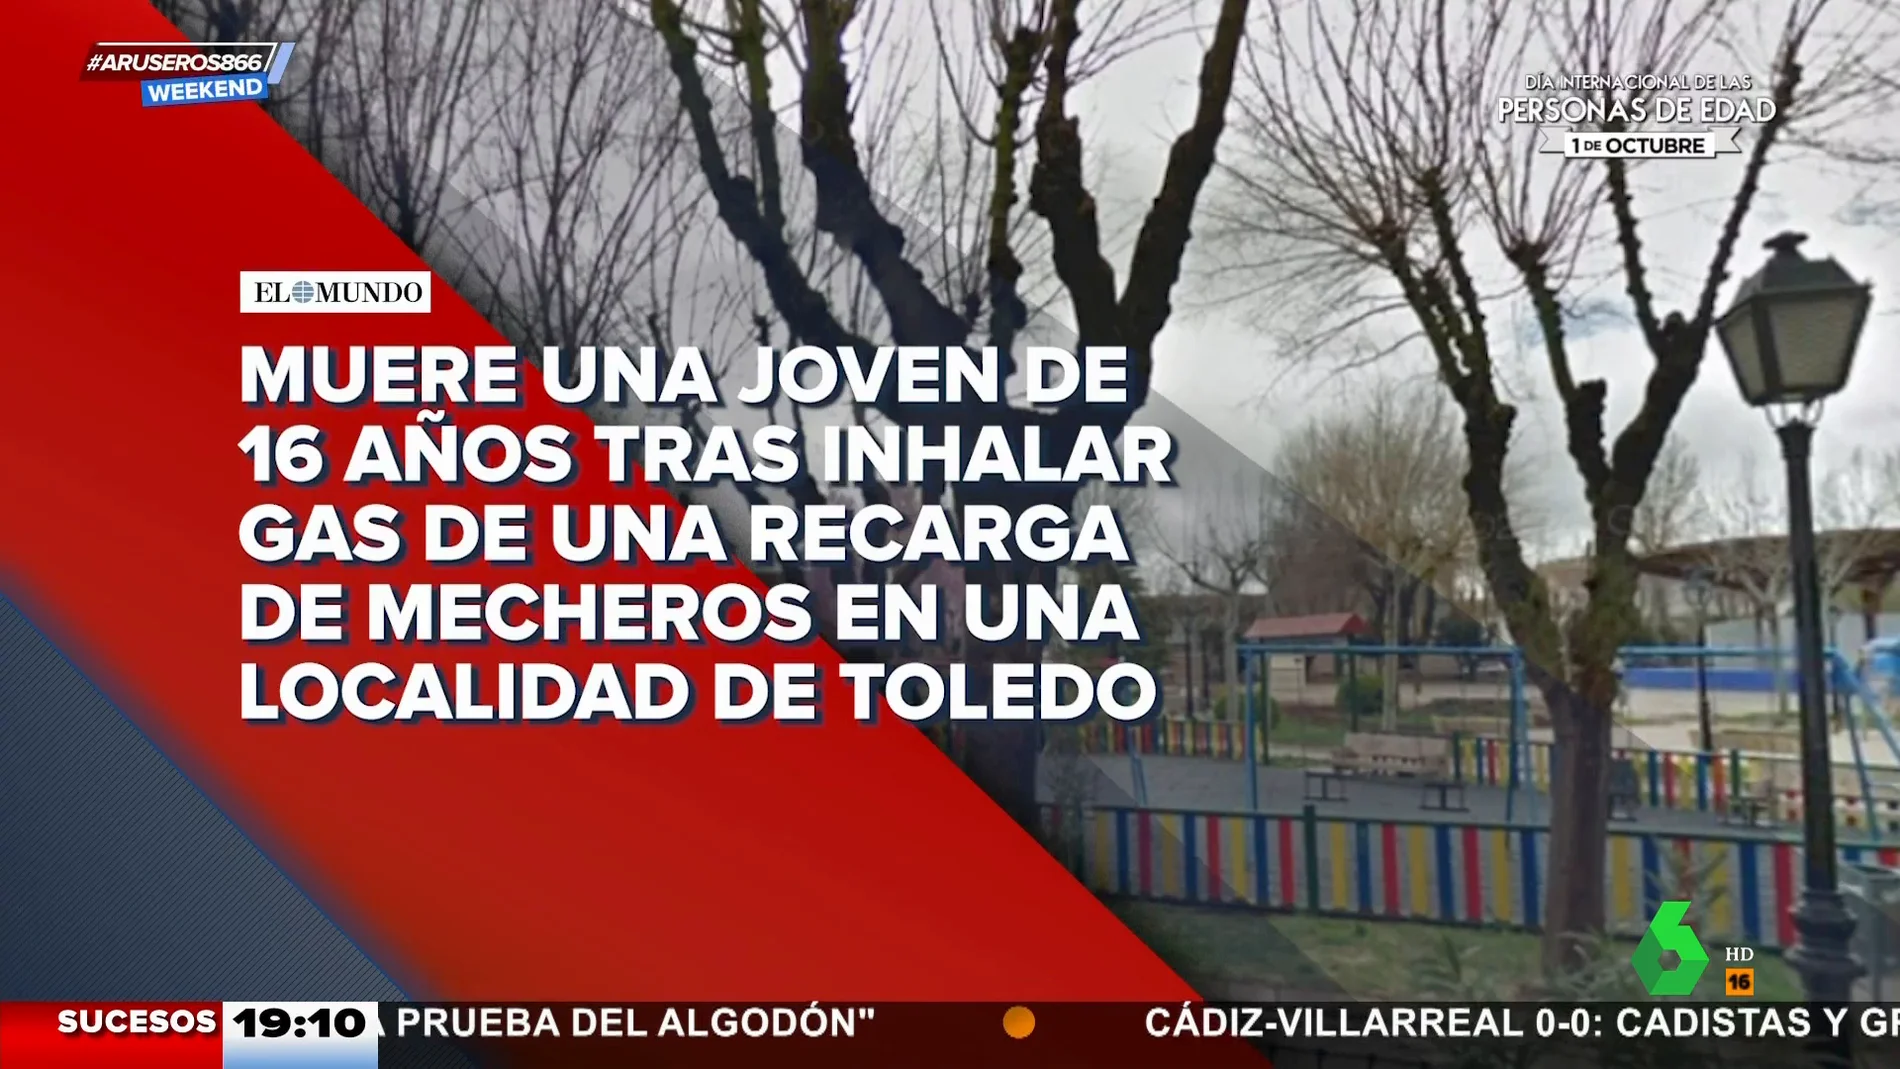 Muere una menor de 16 años tras inhalar gas de recarga de mecheros en  Corral de Almaguer, Toledo